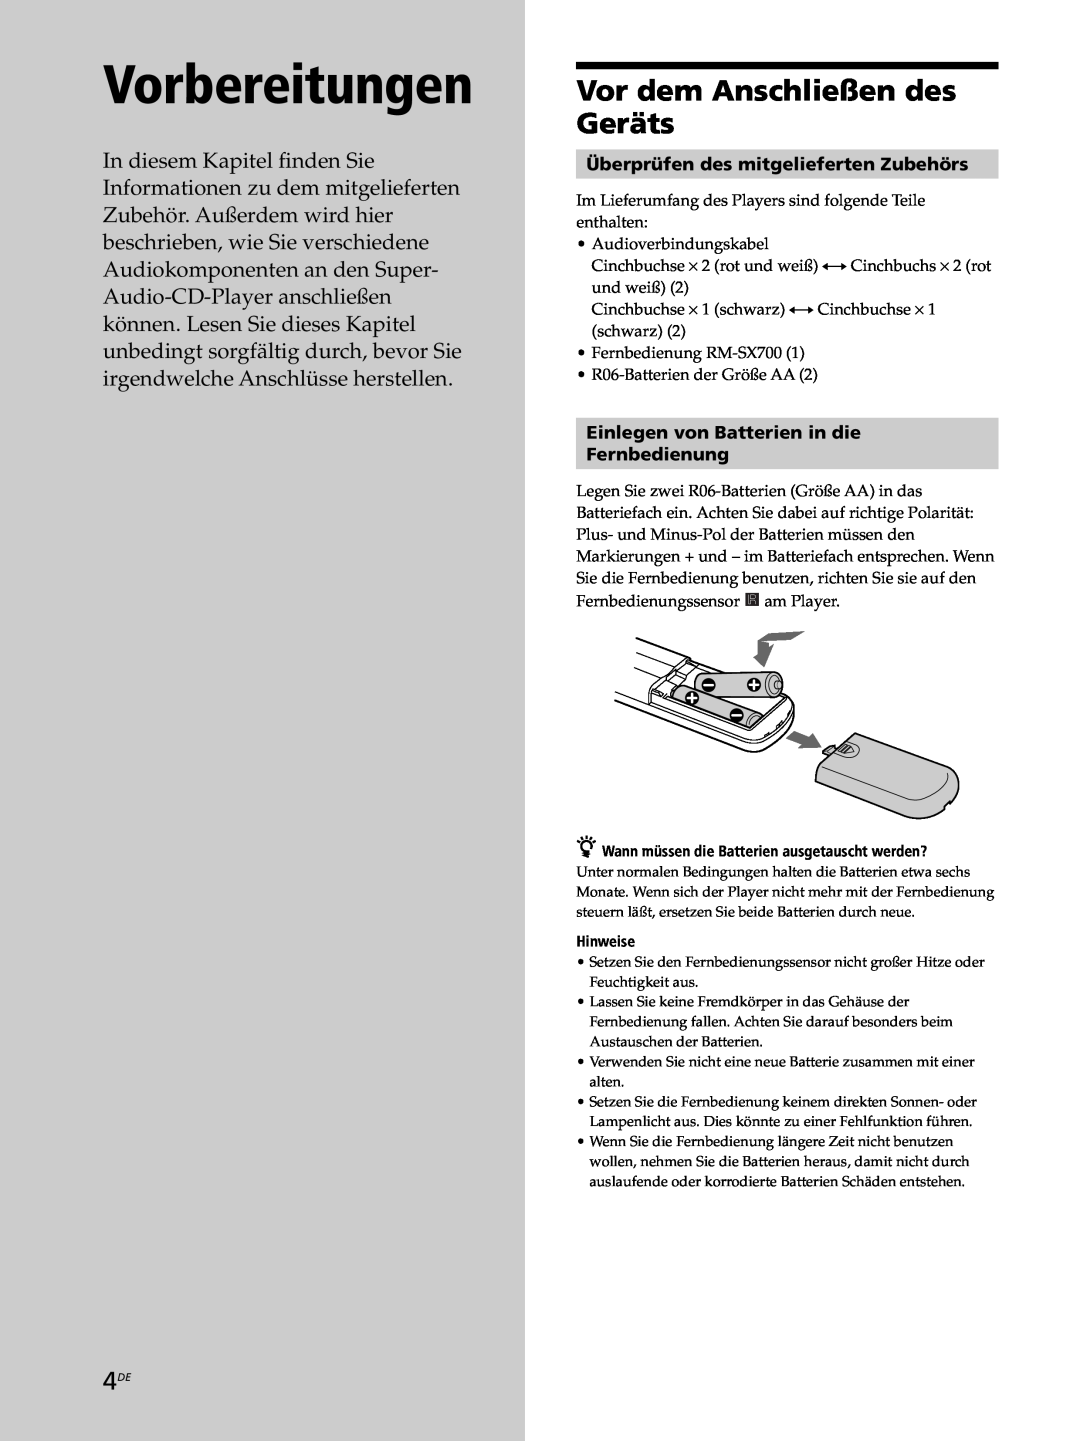 Sony SCD-XB770 Vorbereitungen, Vor dem Anschließen des Geräts, Überprüfen des mitgelieferten Zubehörs 